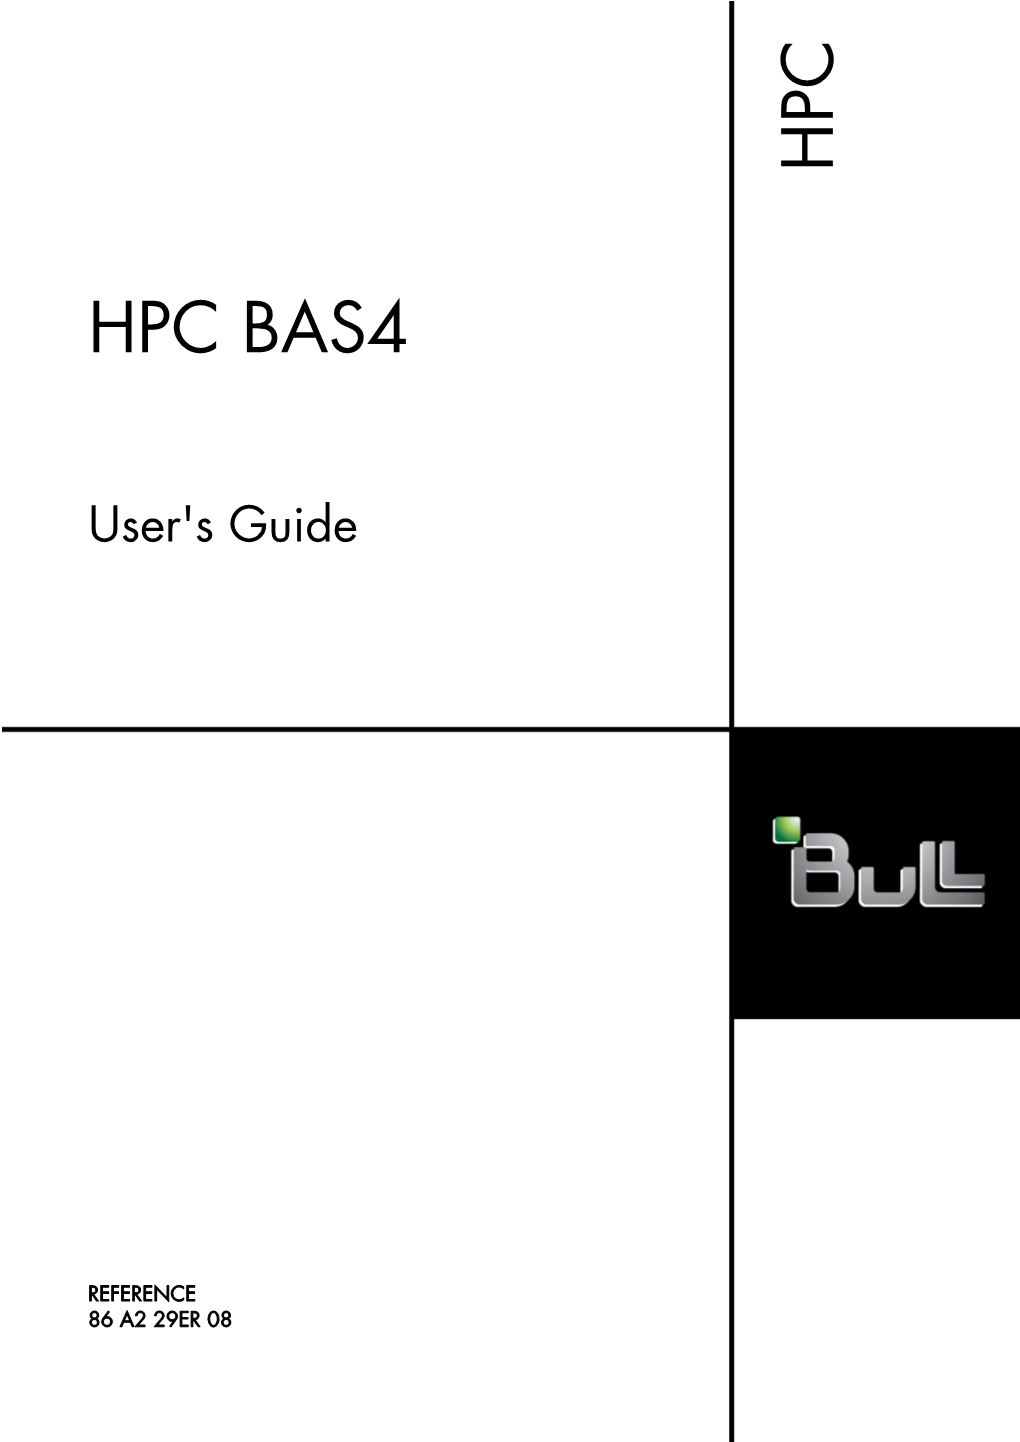 HPC BAS4 User's Guide